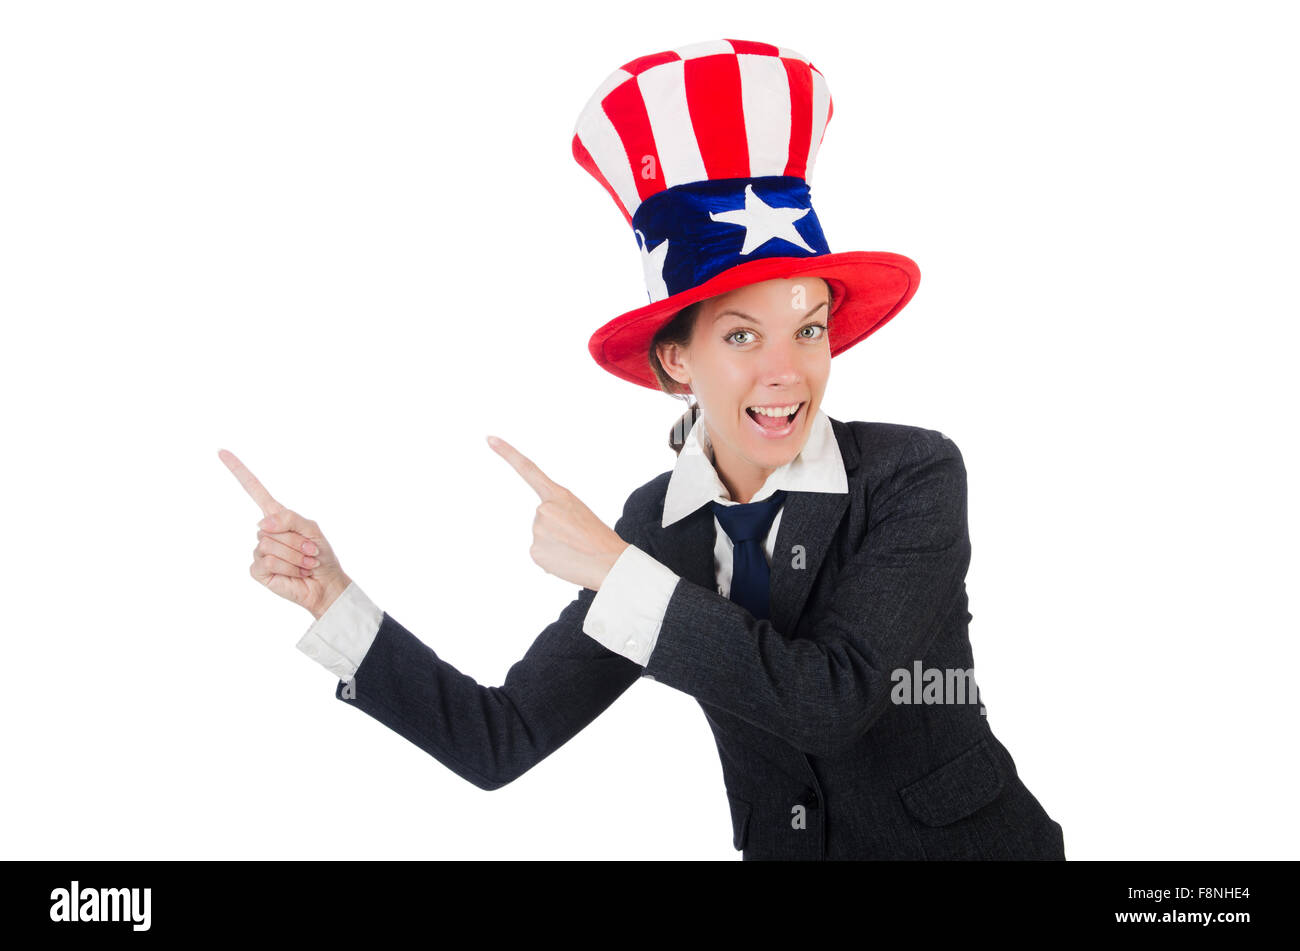 Мел показал шляпу. Американец в шляпе показывает пальцем. Человек в шляпе раскрывает руки.